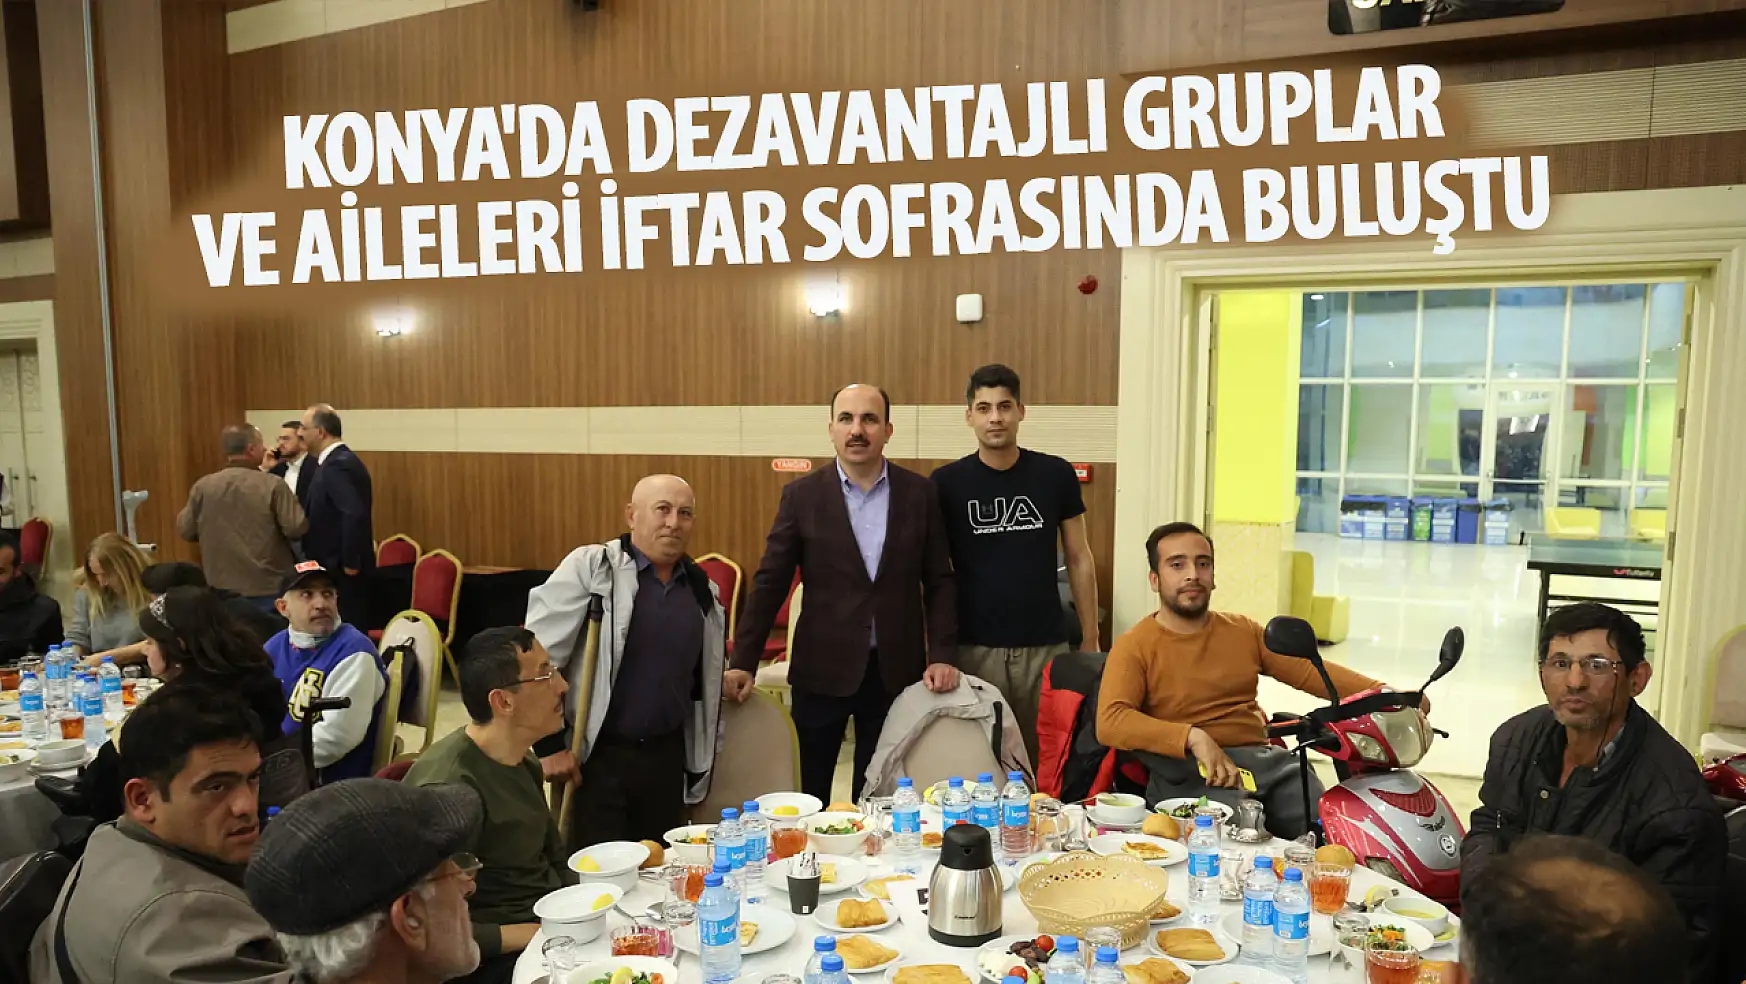 Konya'da Dezavantajlı Gruplar ve Aileleri İftar Sofrasında Buluştu